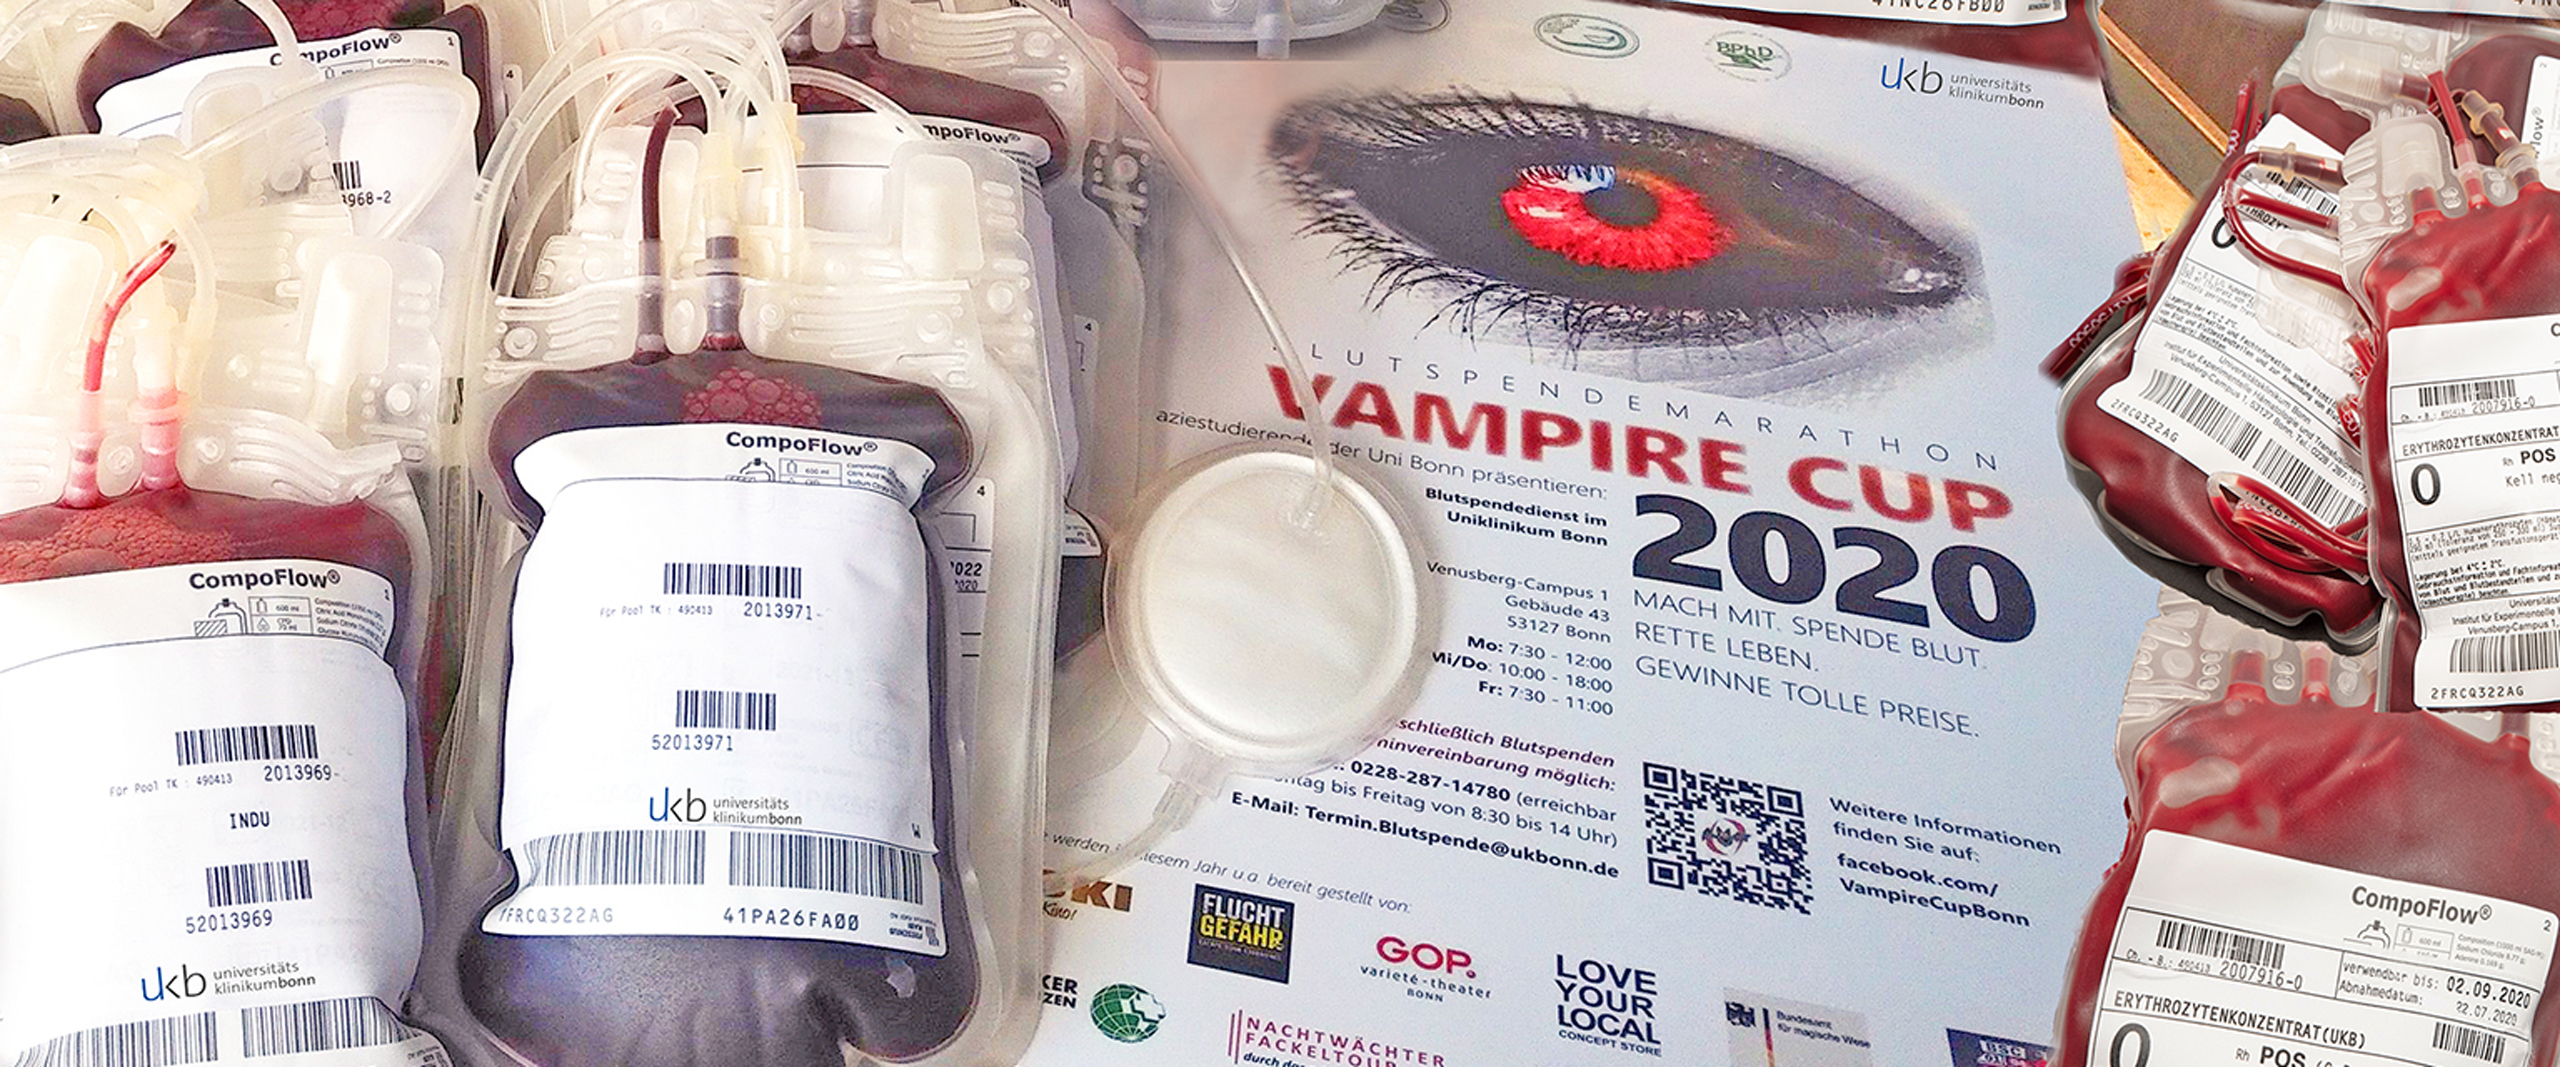 306 Liter Blut sichern 2. Platz im Vampire-Cup